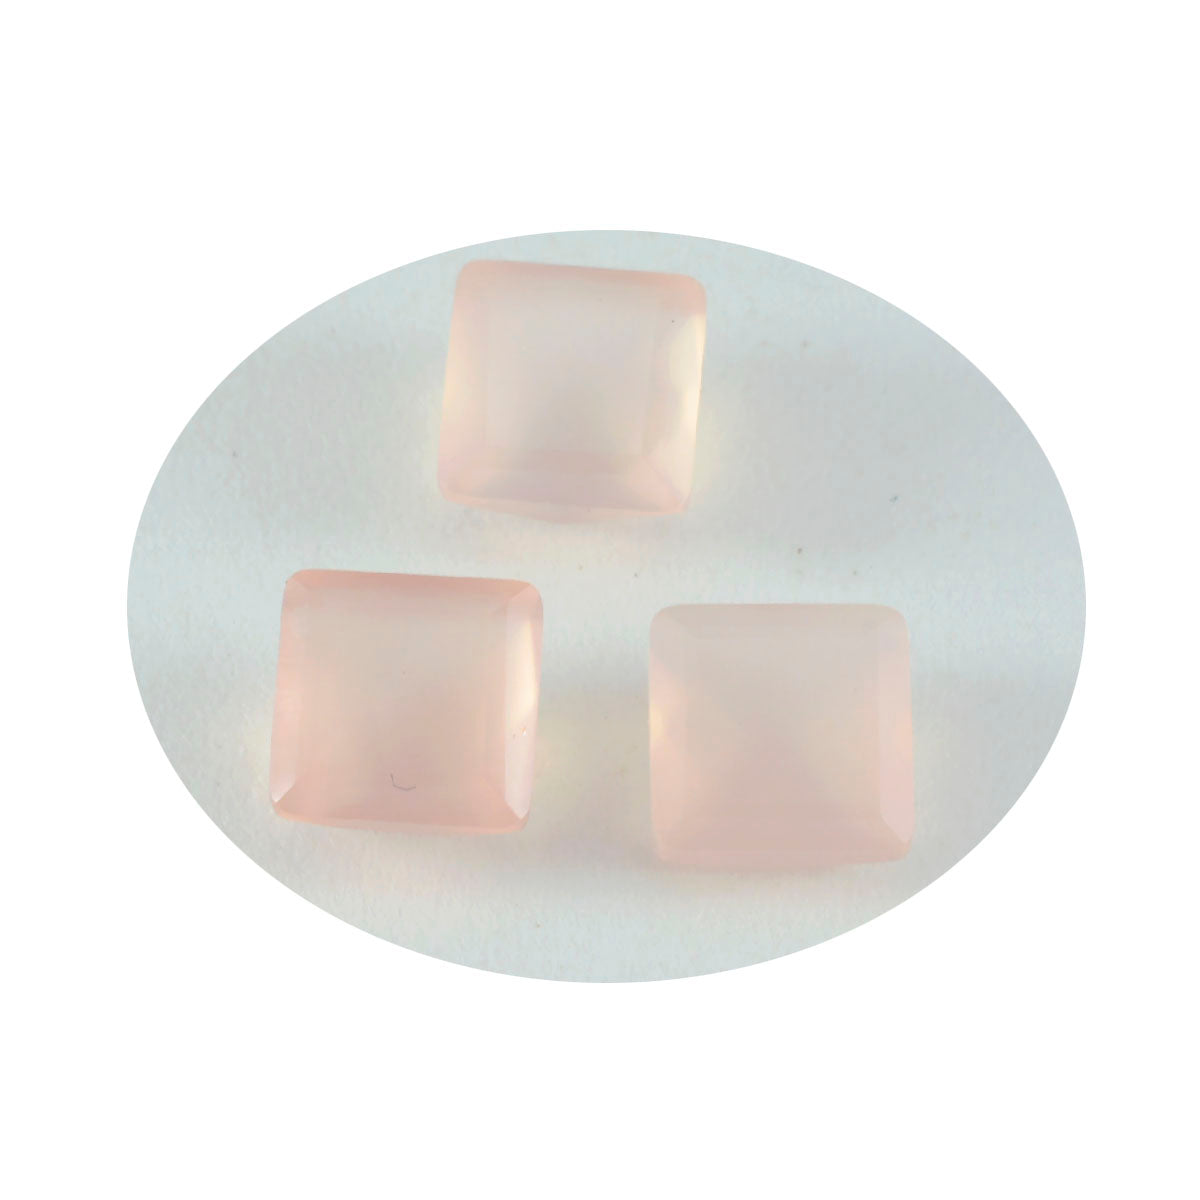 riyogems 1шт розовый кварц ограненный 14x14 мм квадратной формы драгоценный камень потрясающего качества